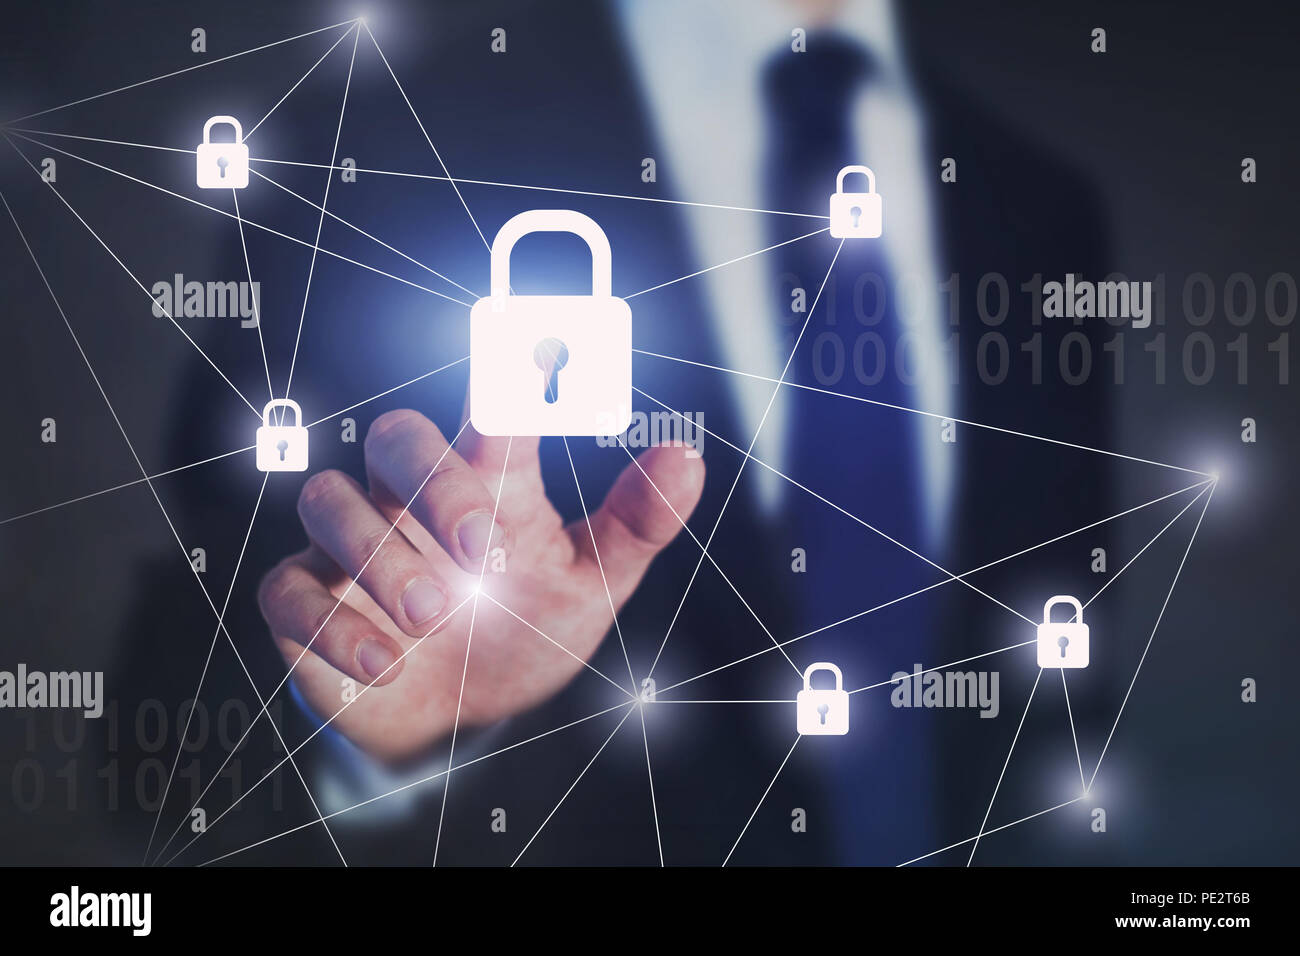 Concept de sécurité réseau internet, business man lock sur un écran virtuel, la protection contre les cyberattaques Banque D'Images